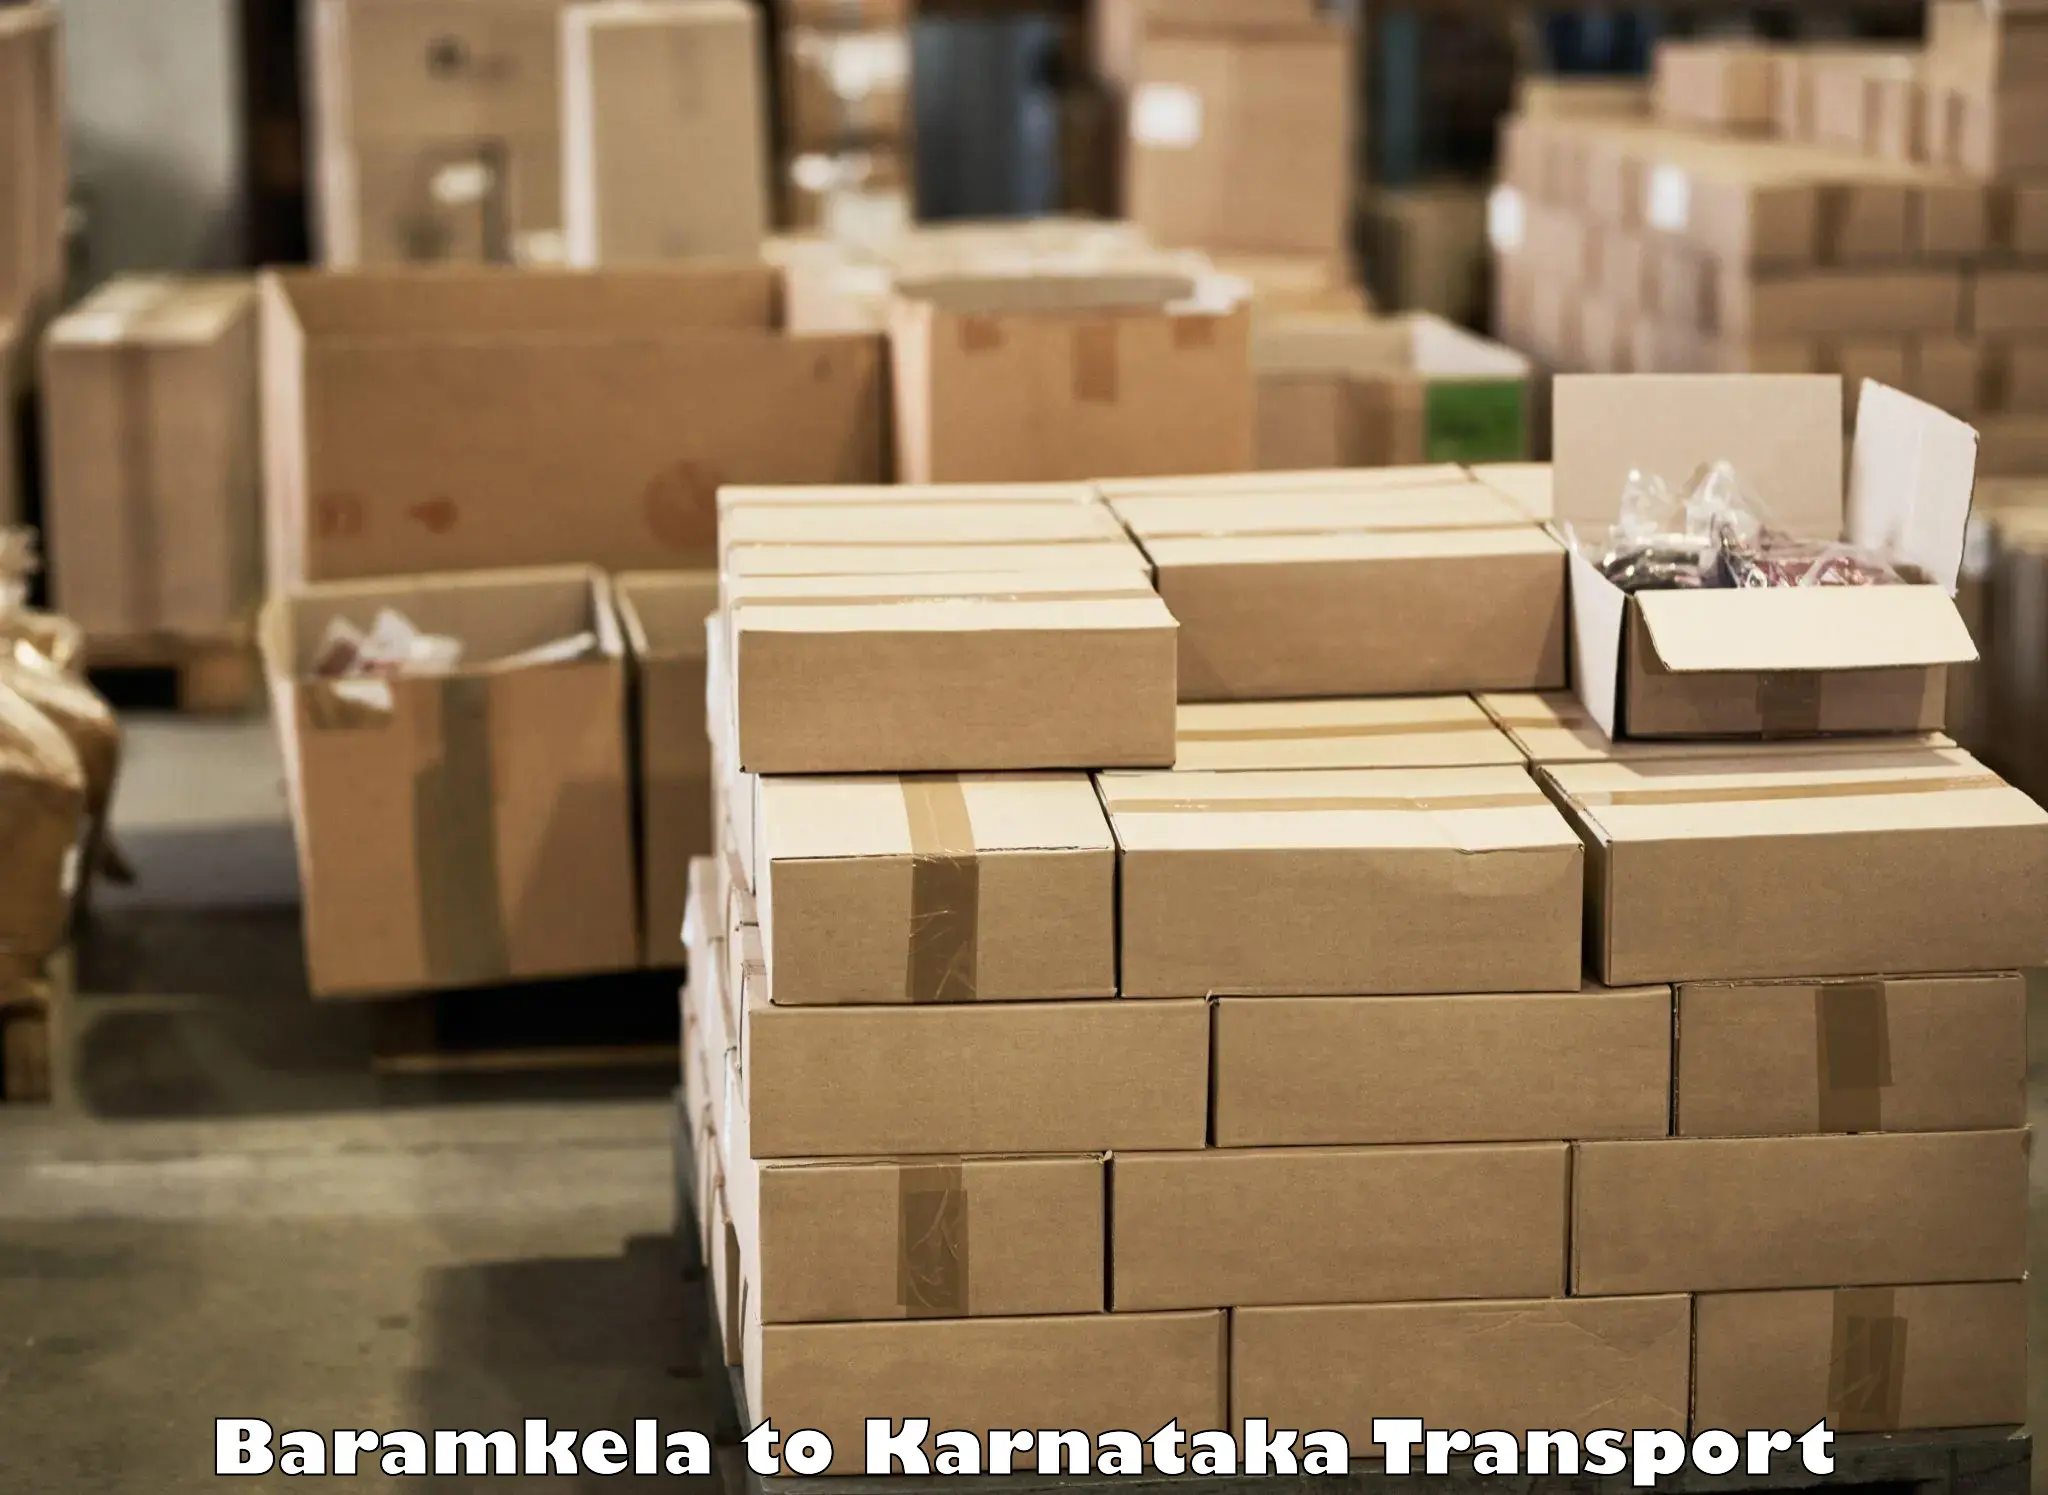 Road transport online services Baramkela to Bidar